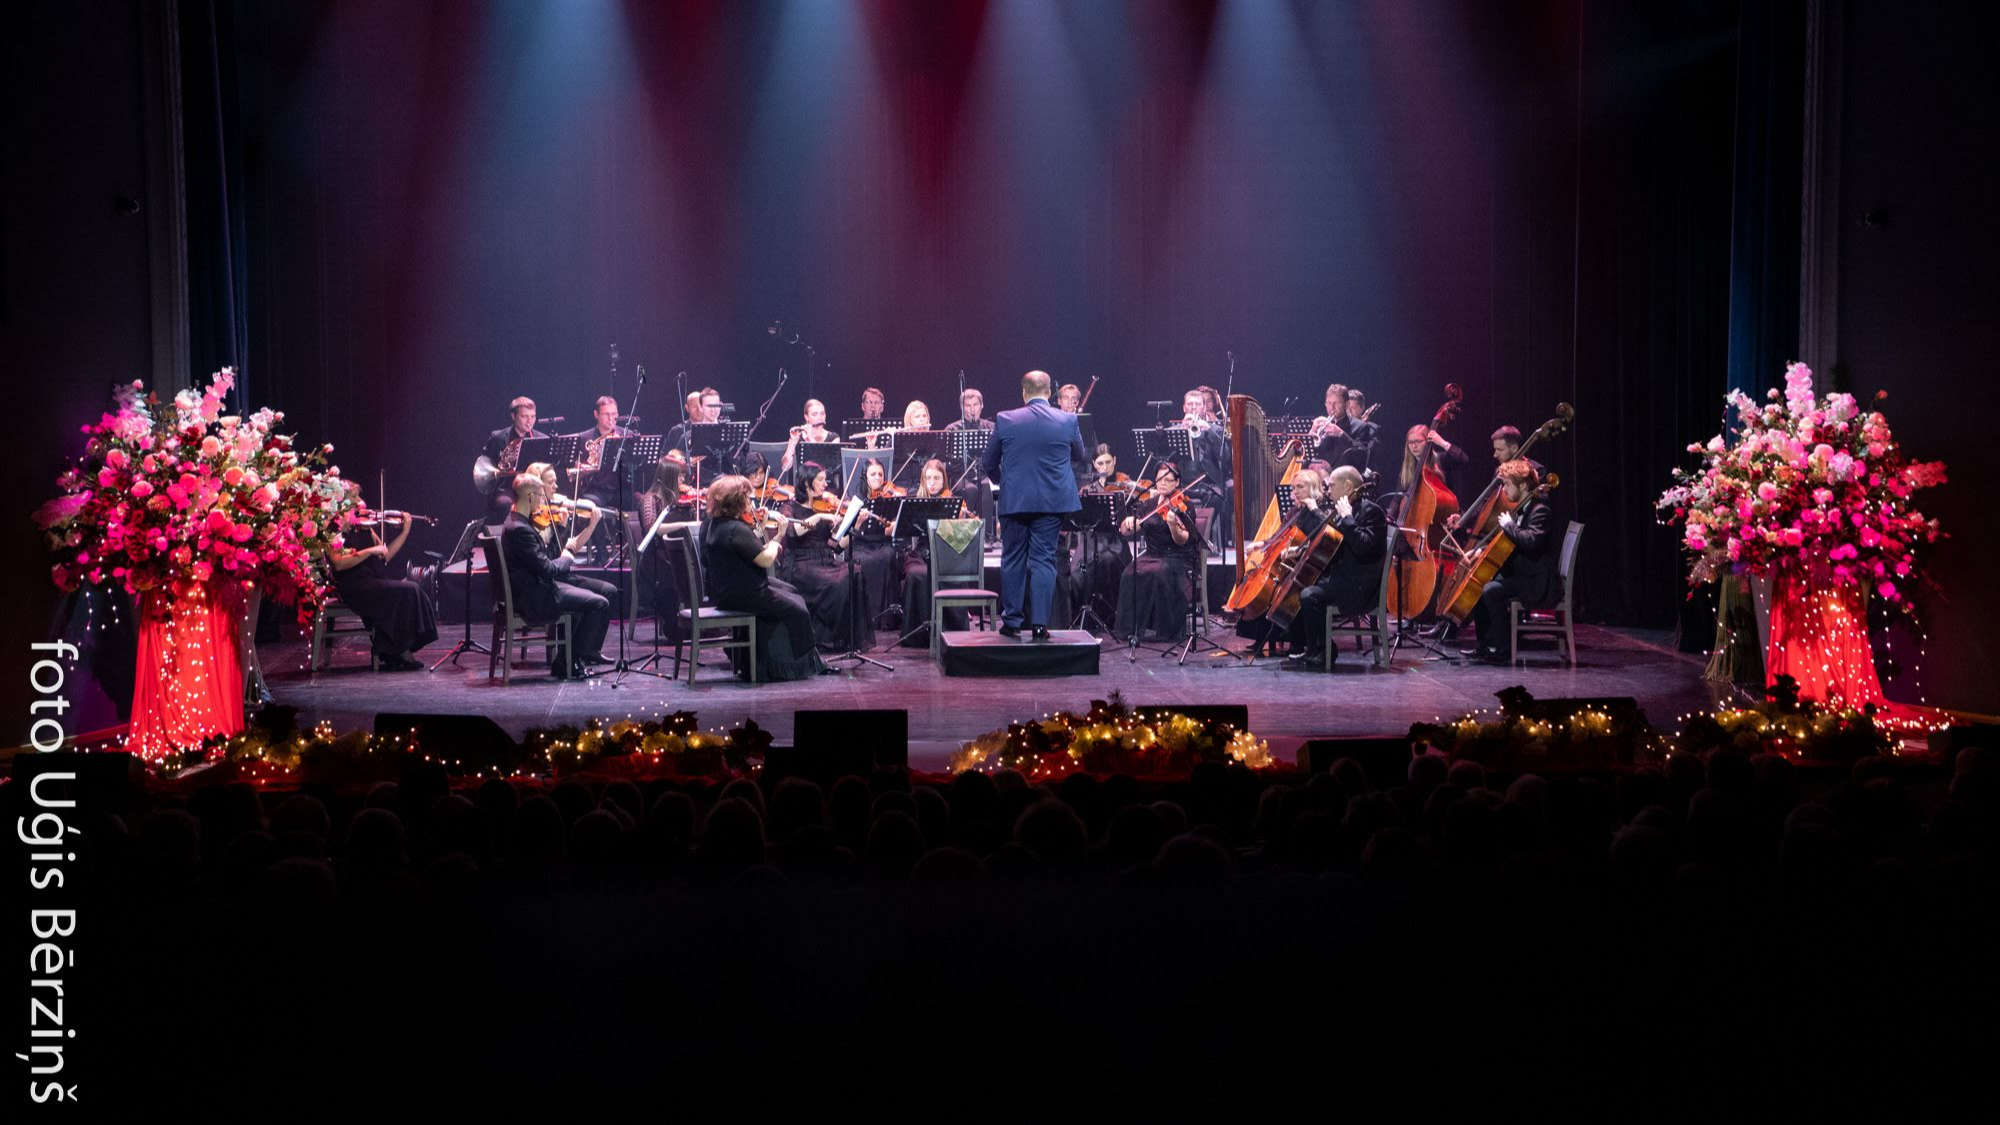 Operetes teātris gada nogalē aicina  uz krāšņu Jaungada koncertu "Evergreens"